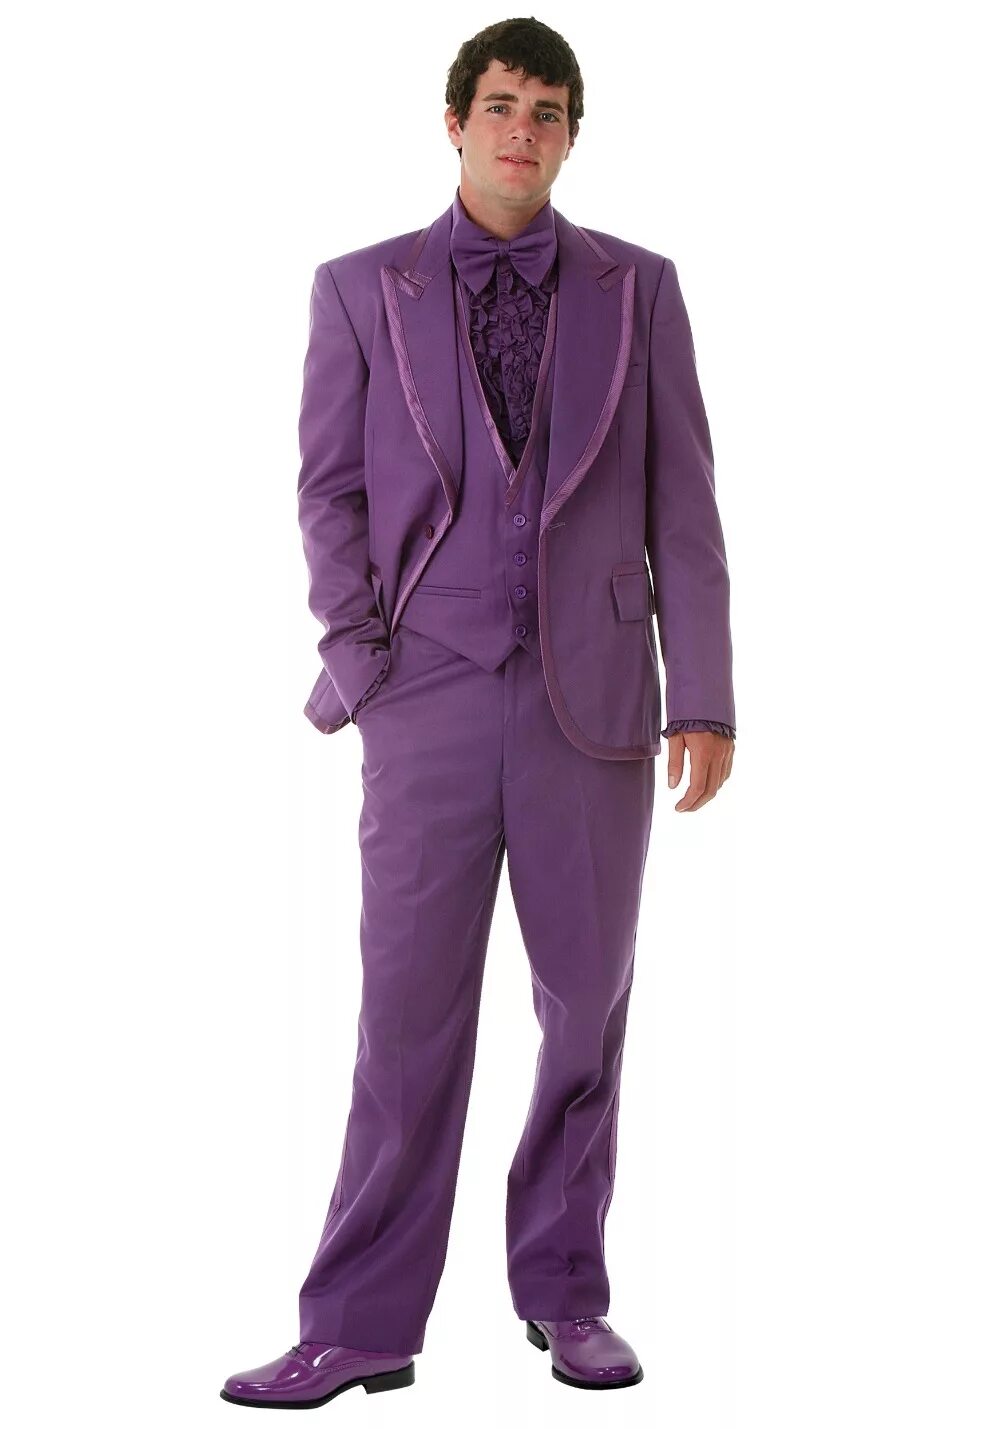 Костюмы купить мужские бу. Фиолетовый костюм мужской. Сиреневый костюм мужской. Лиловый костюм мужской. Человек в фиолетовом костюме.